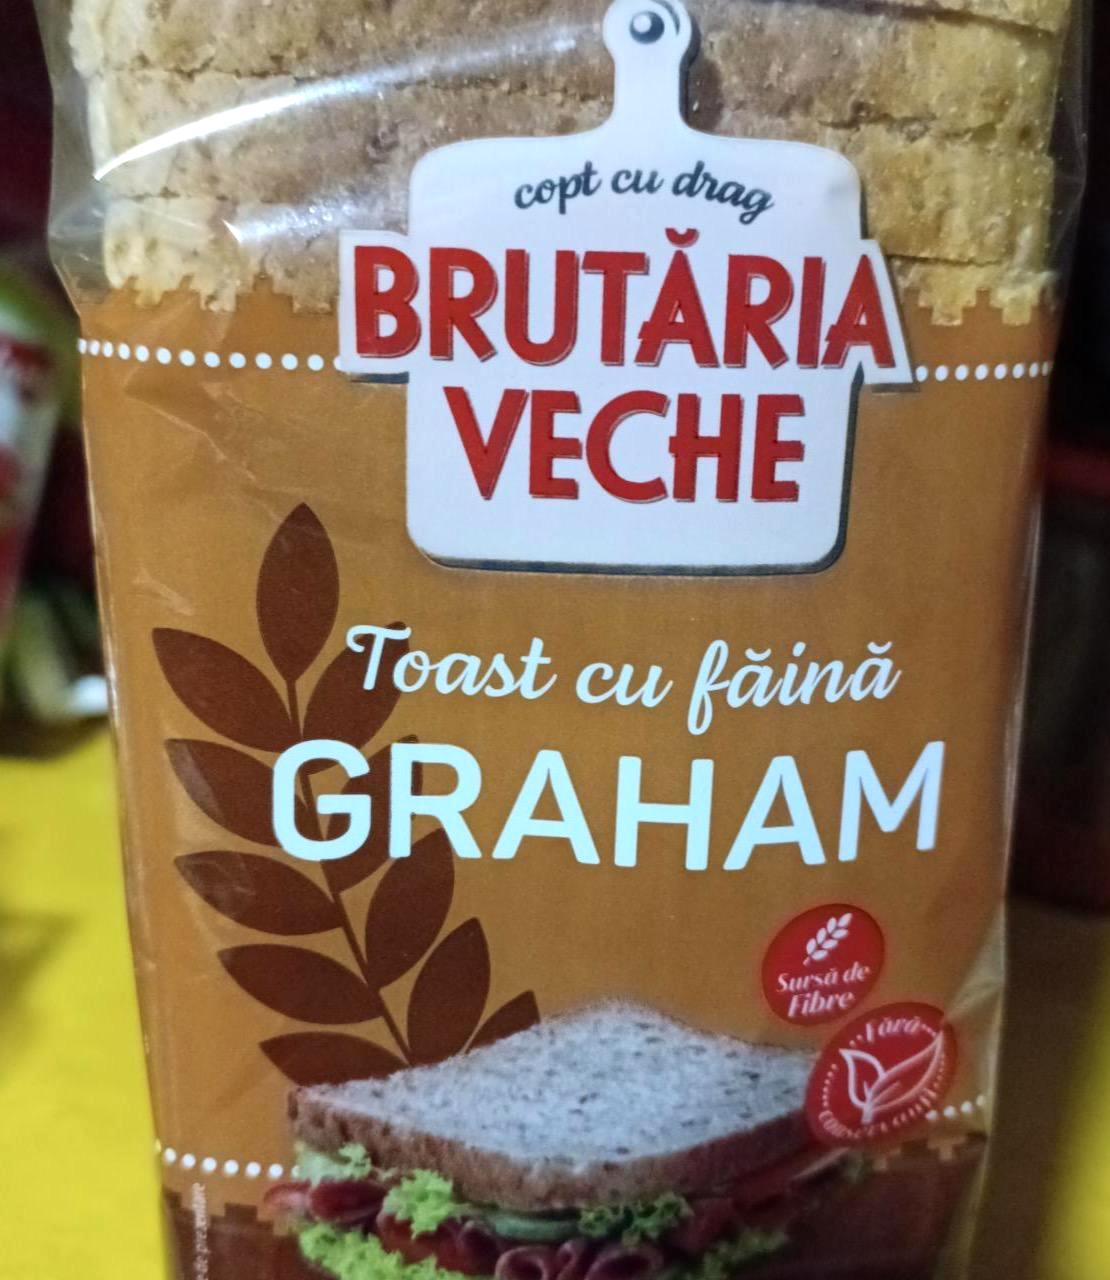 Képek - Graham toast Brutaria veche